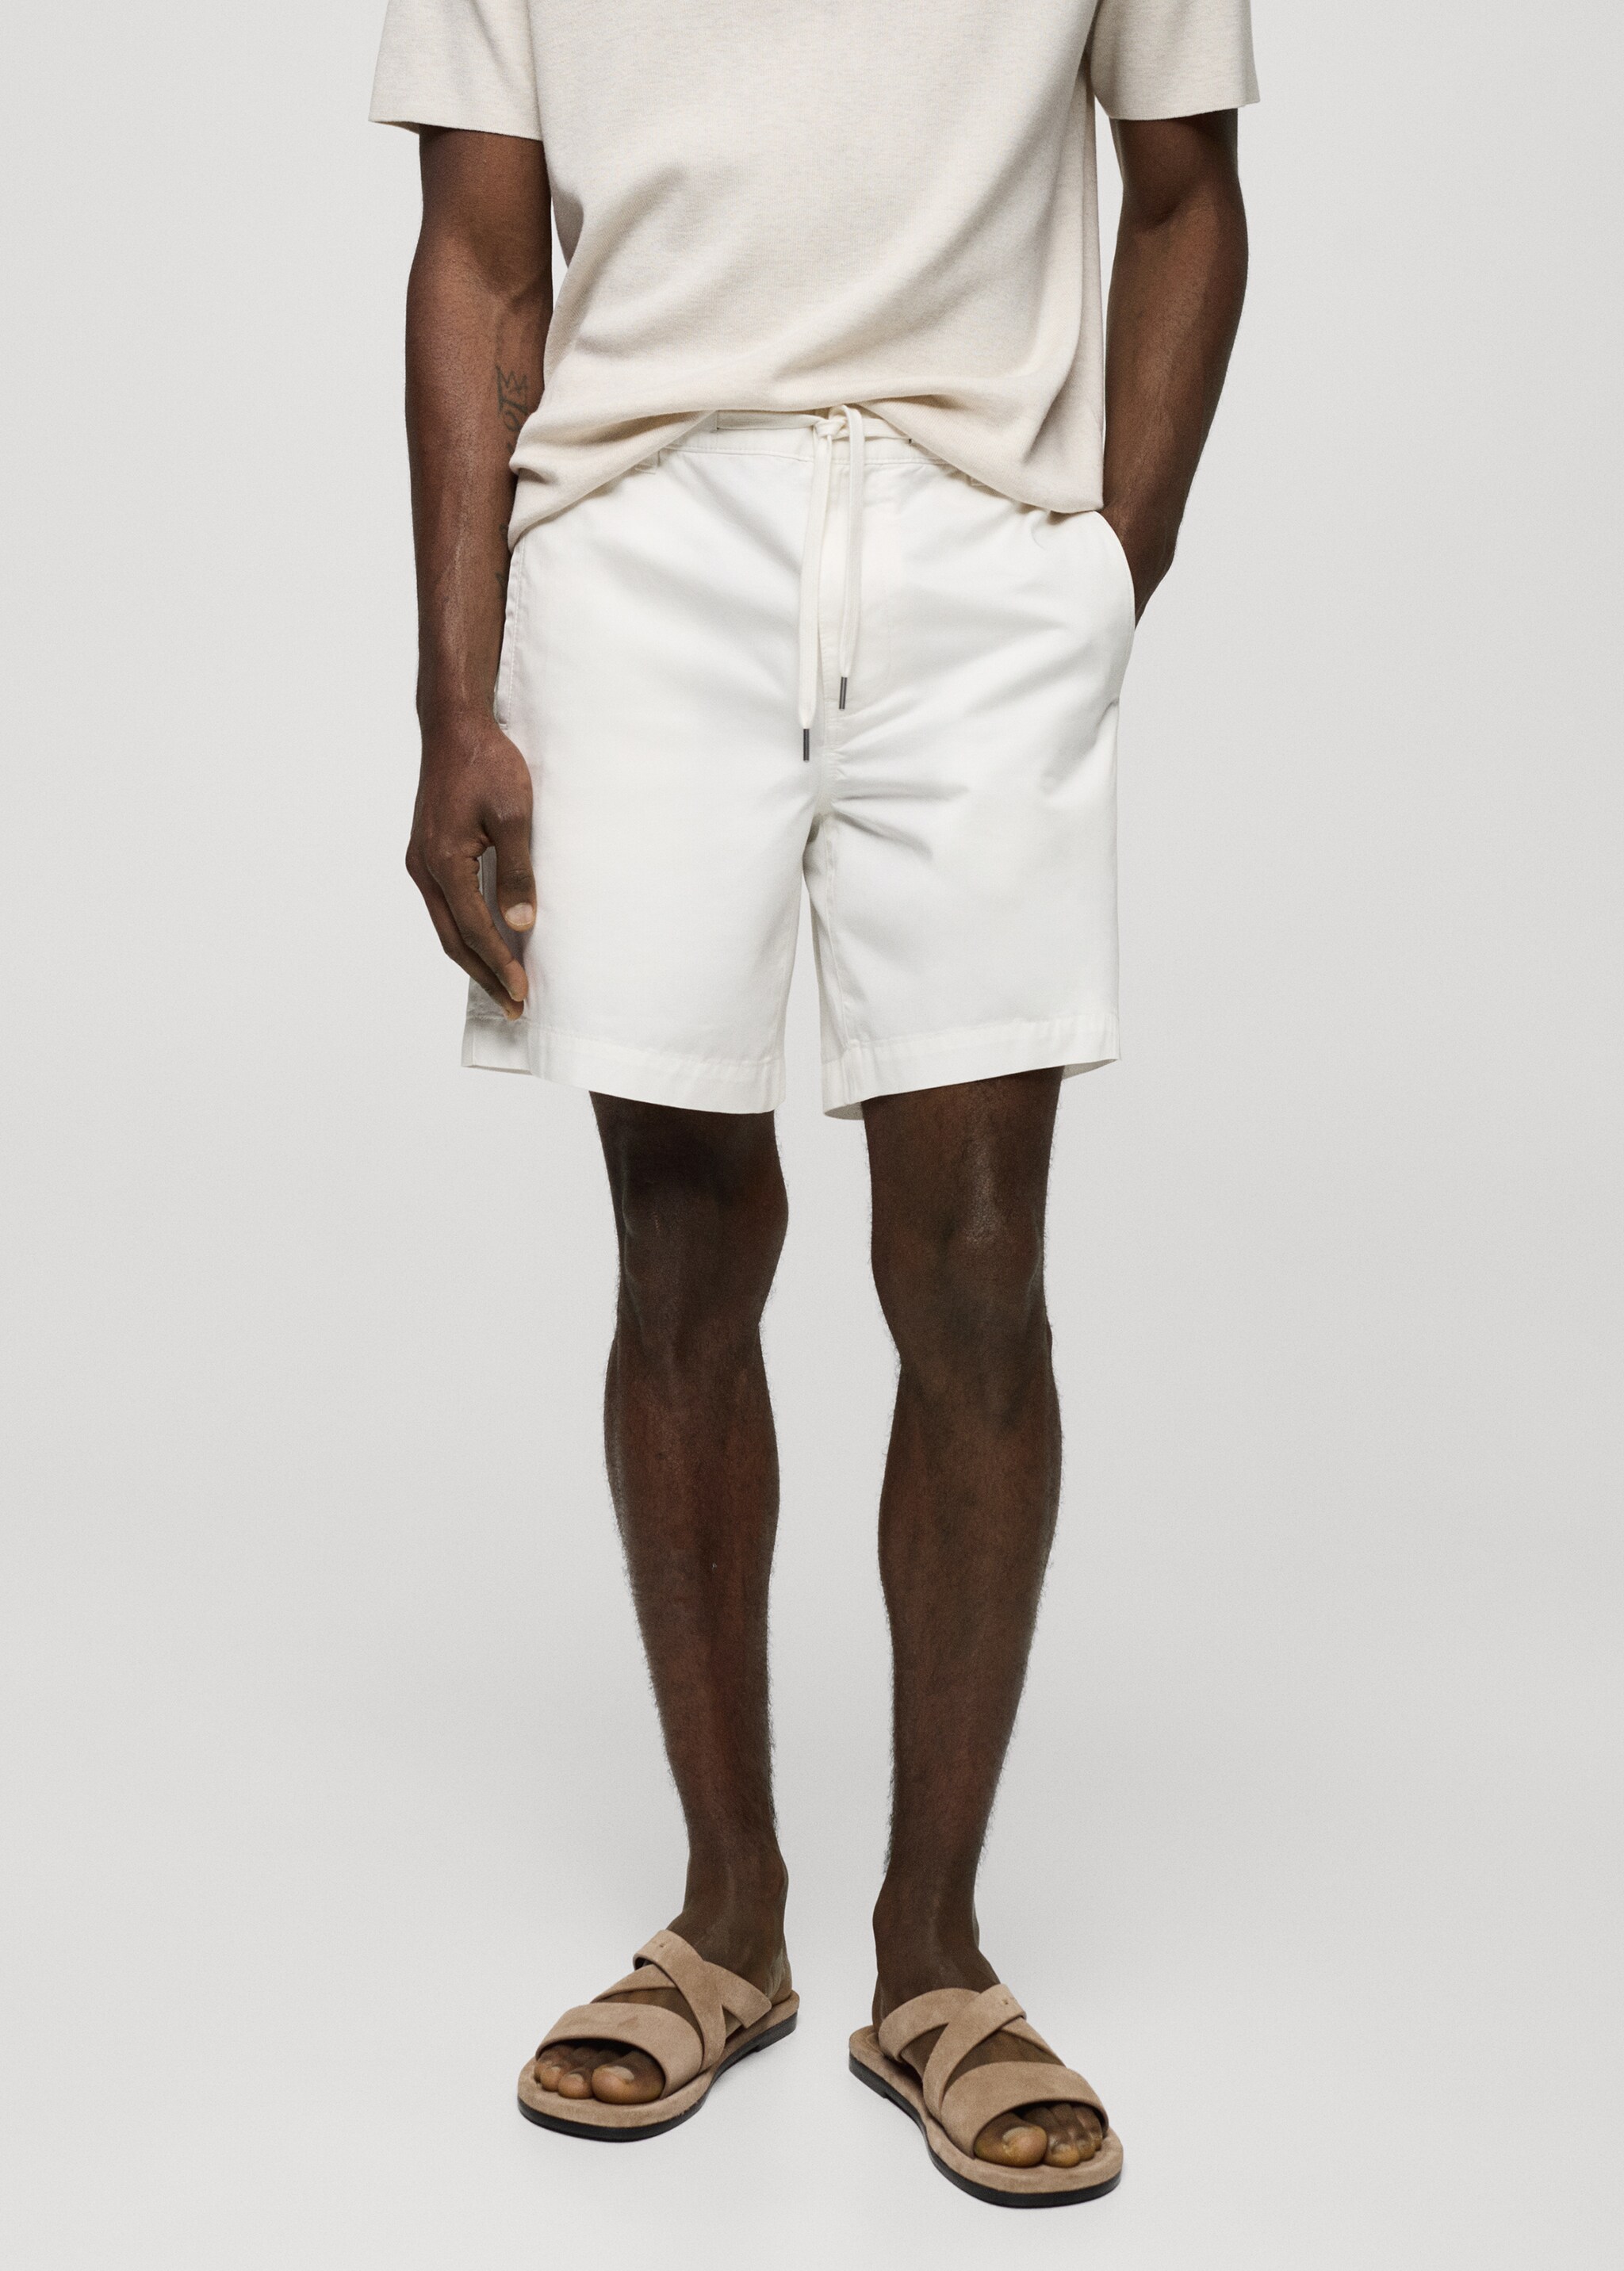 100% cotton drawstring Bermuda shorts - Medium plane